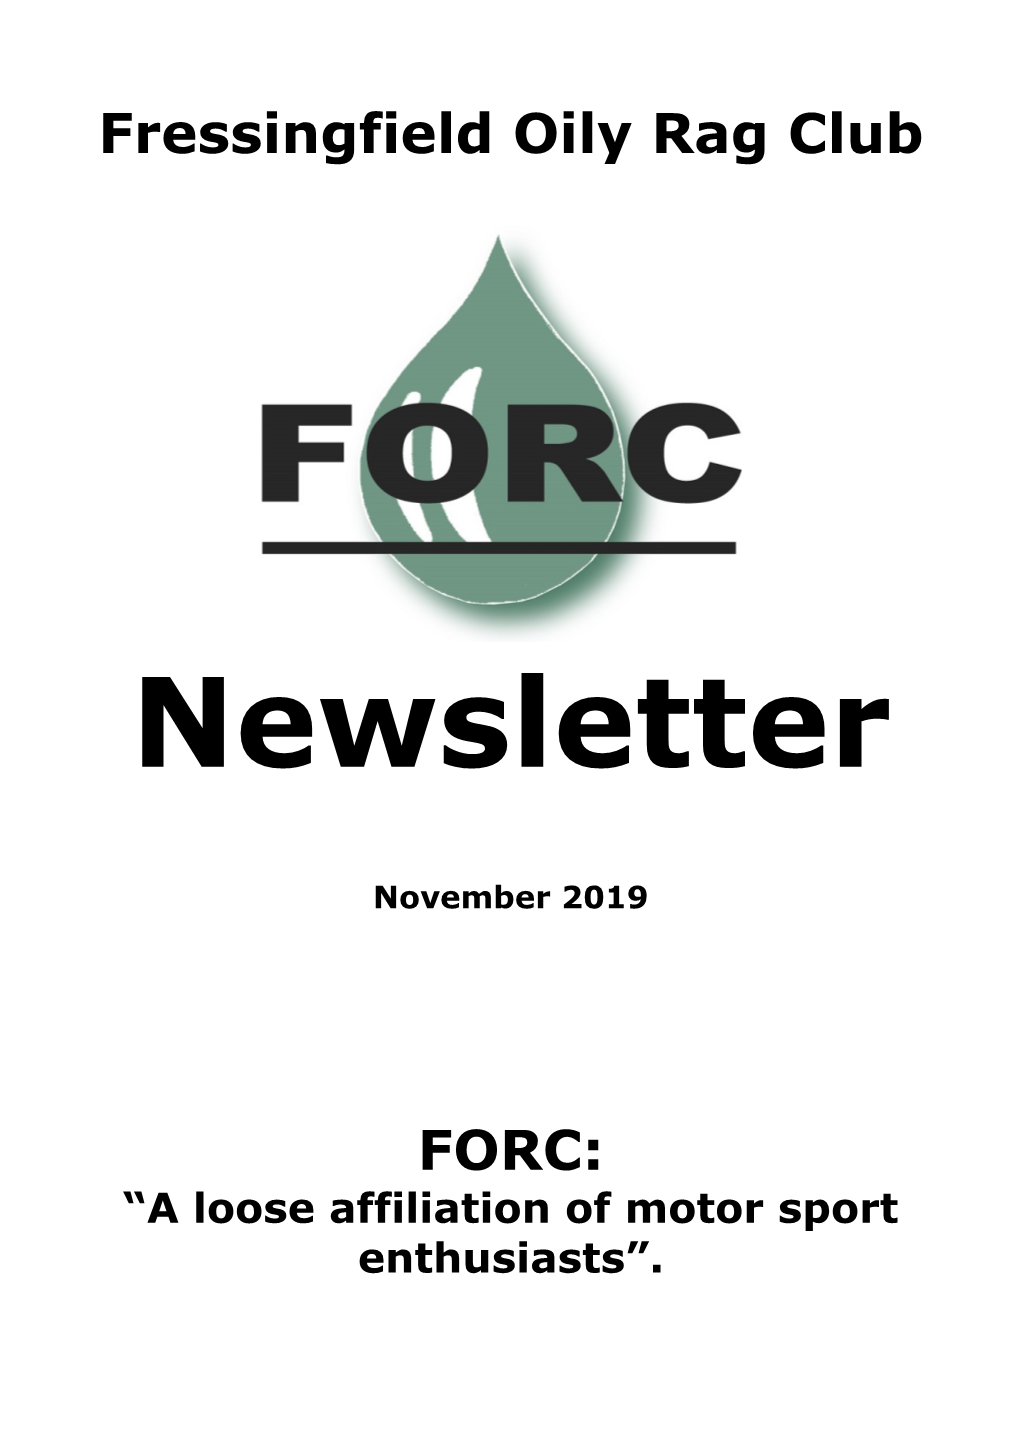 FORC Newsletter November 2019